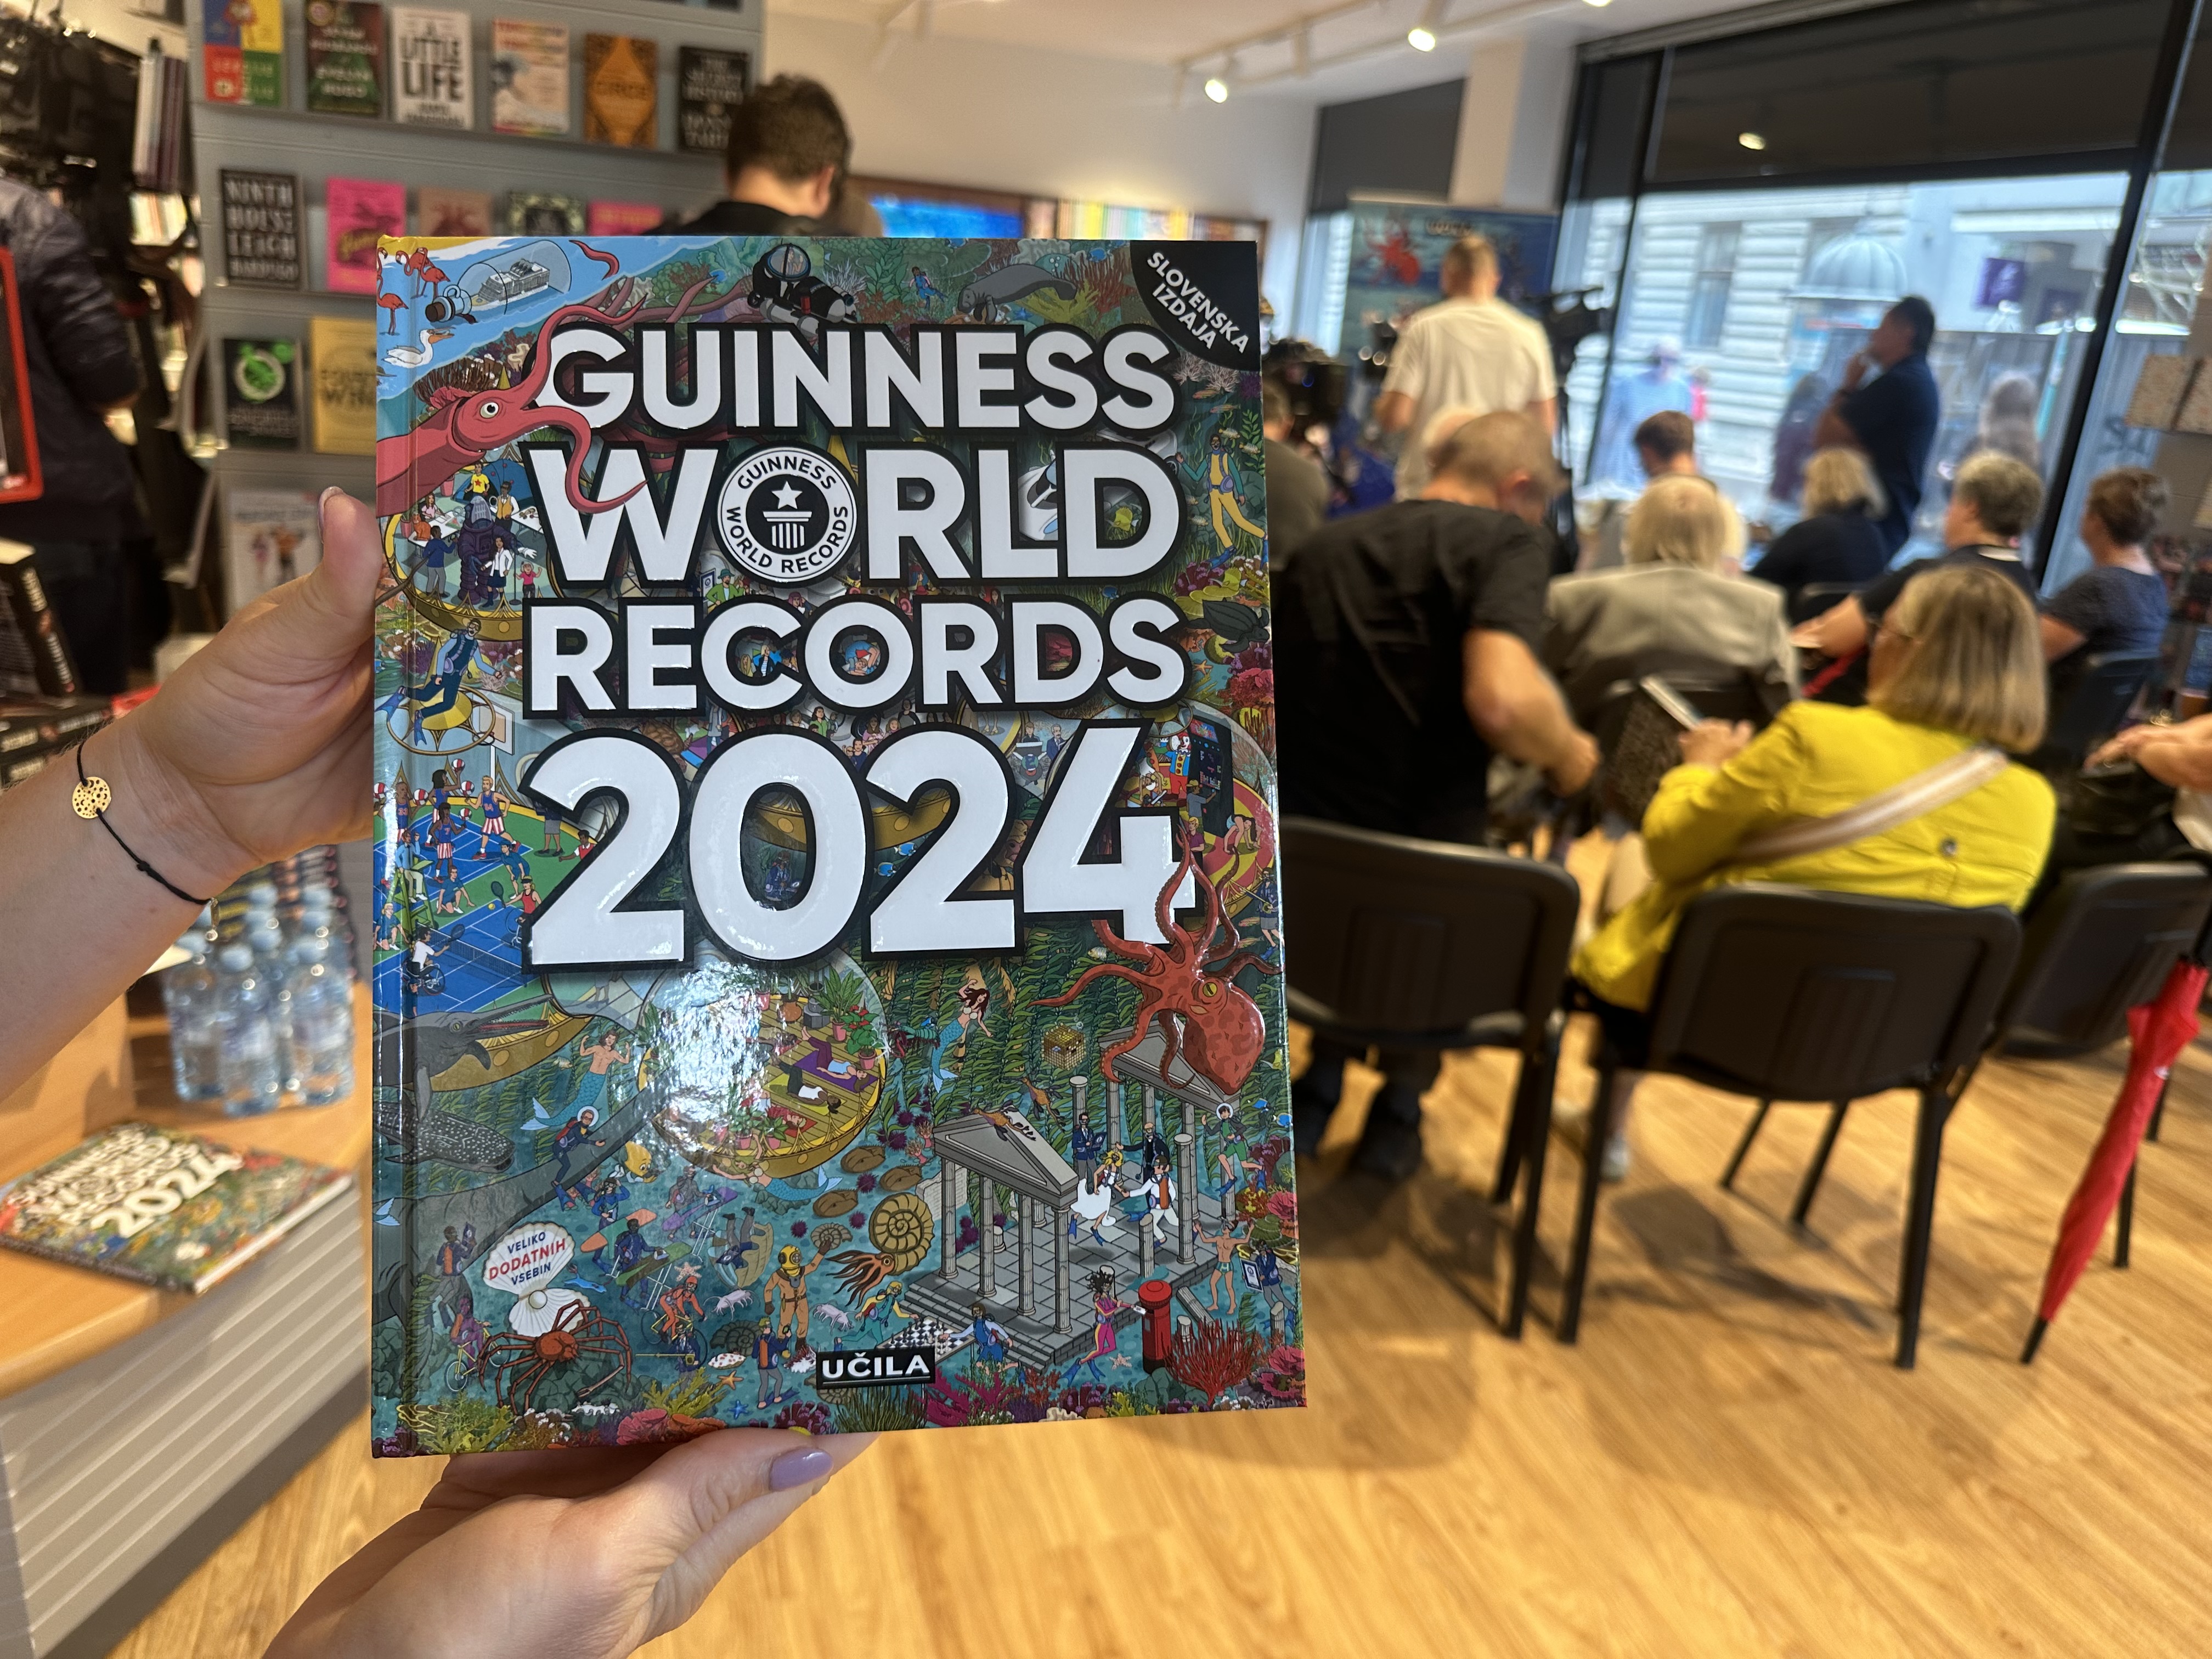 MGML – Prazgodovinska Guinnessova rekorderja iz muzeja [PRESS]